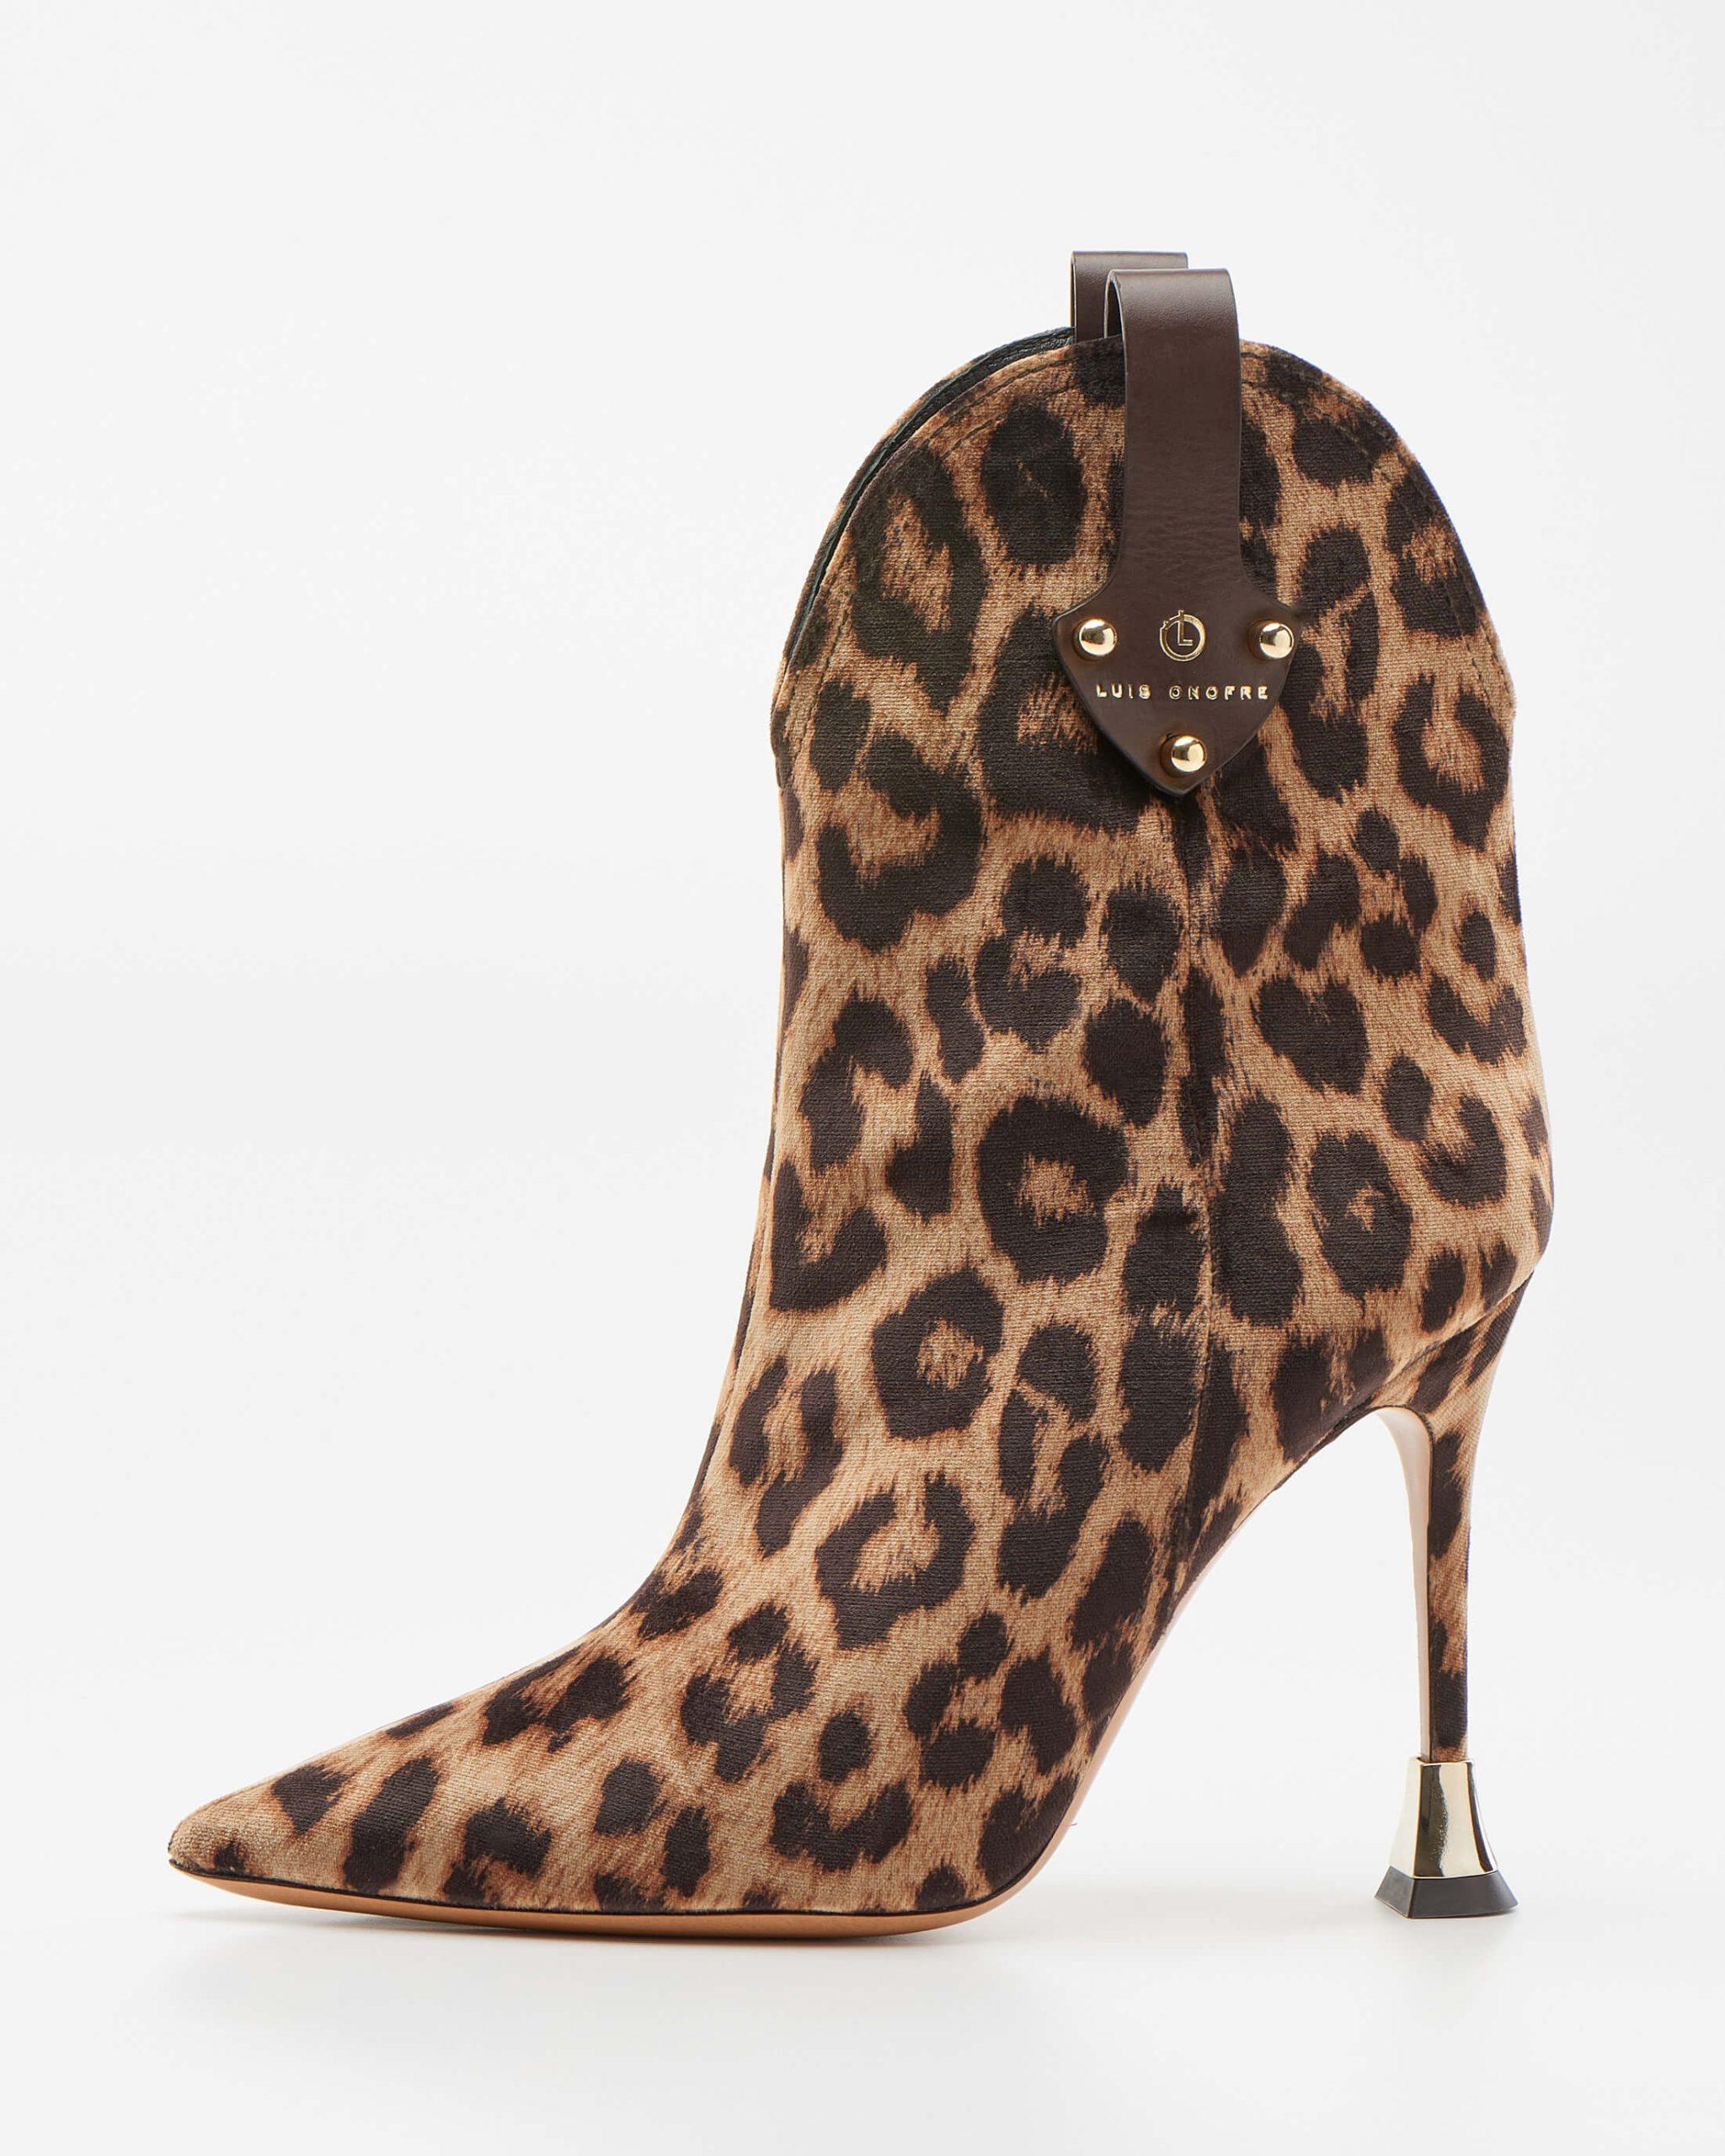 Leopard-print ankle Boots - Luis Onofre - Portuguese Design Shoes